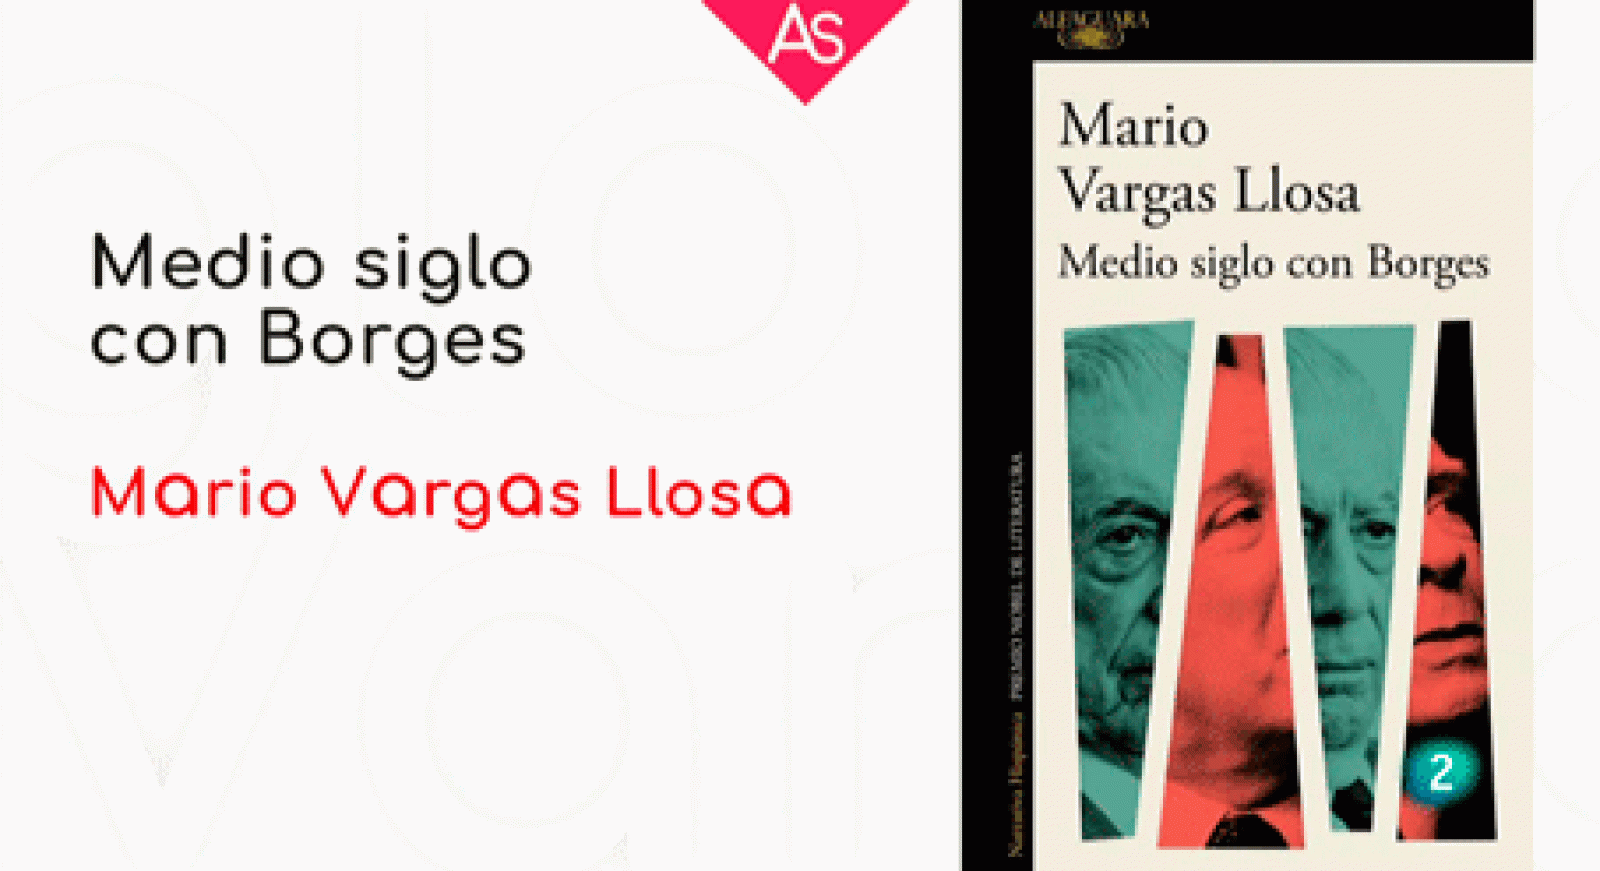 La aventura del saber - Medio siglo con Borges